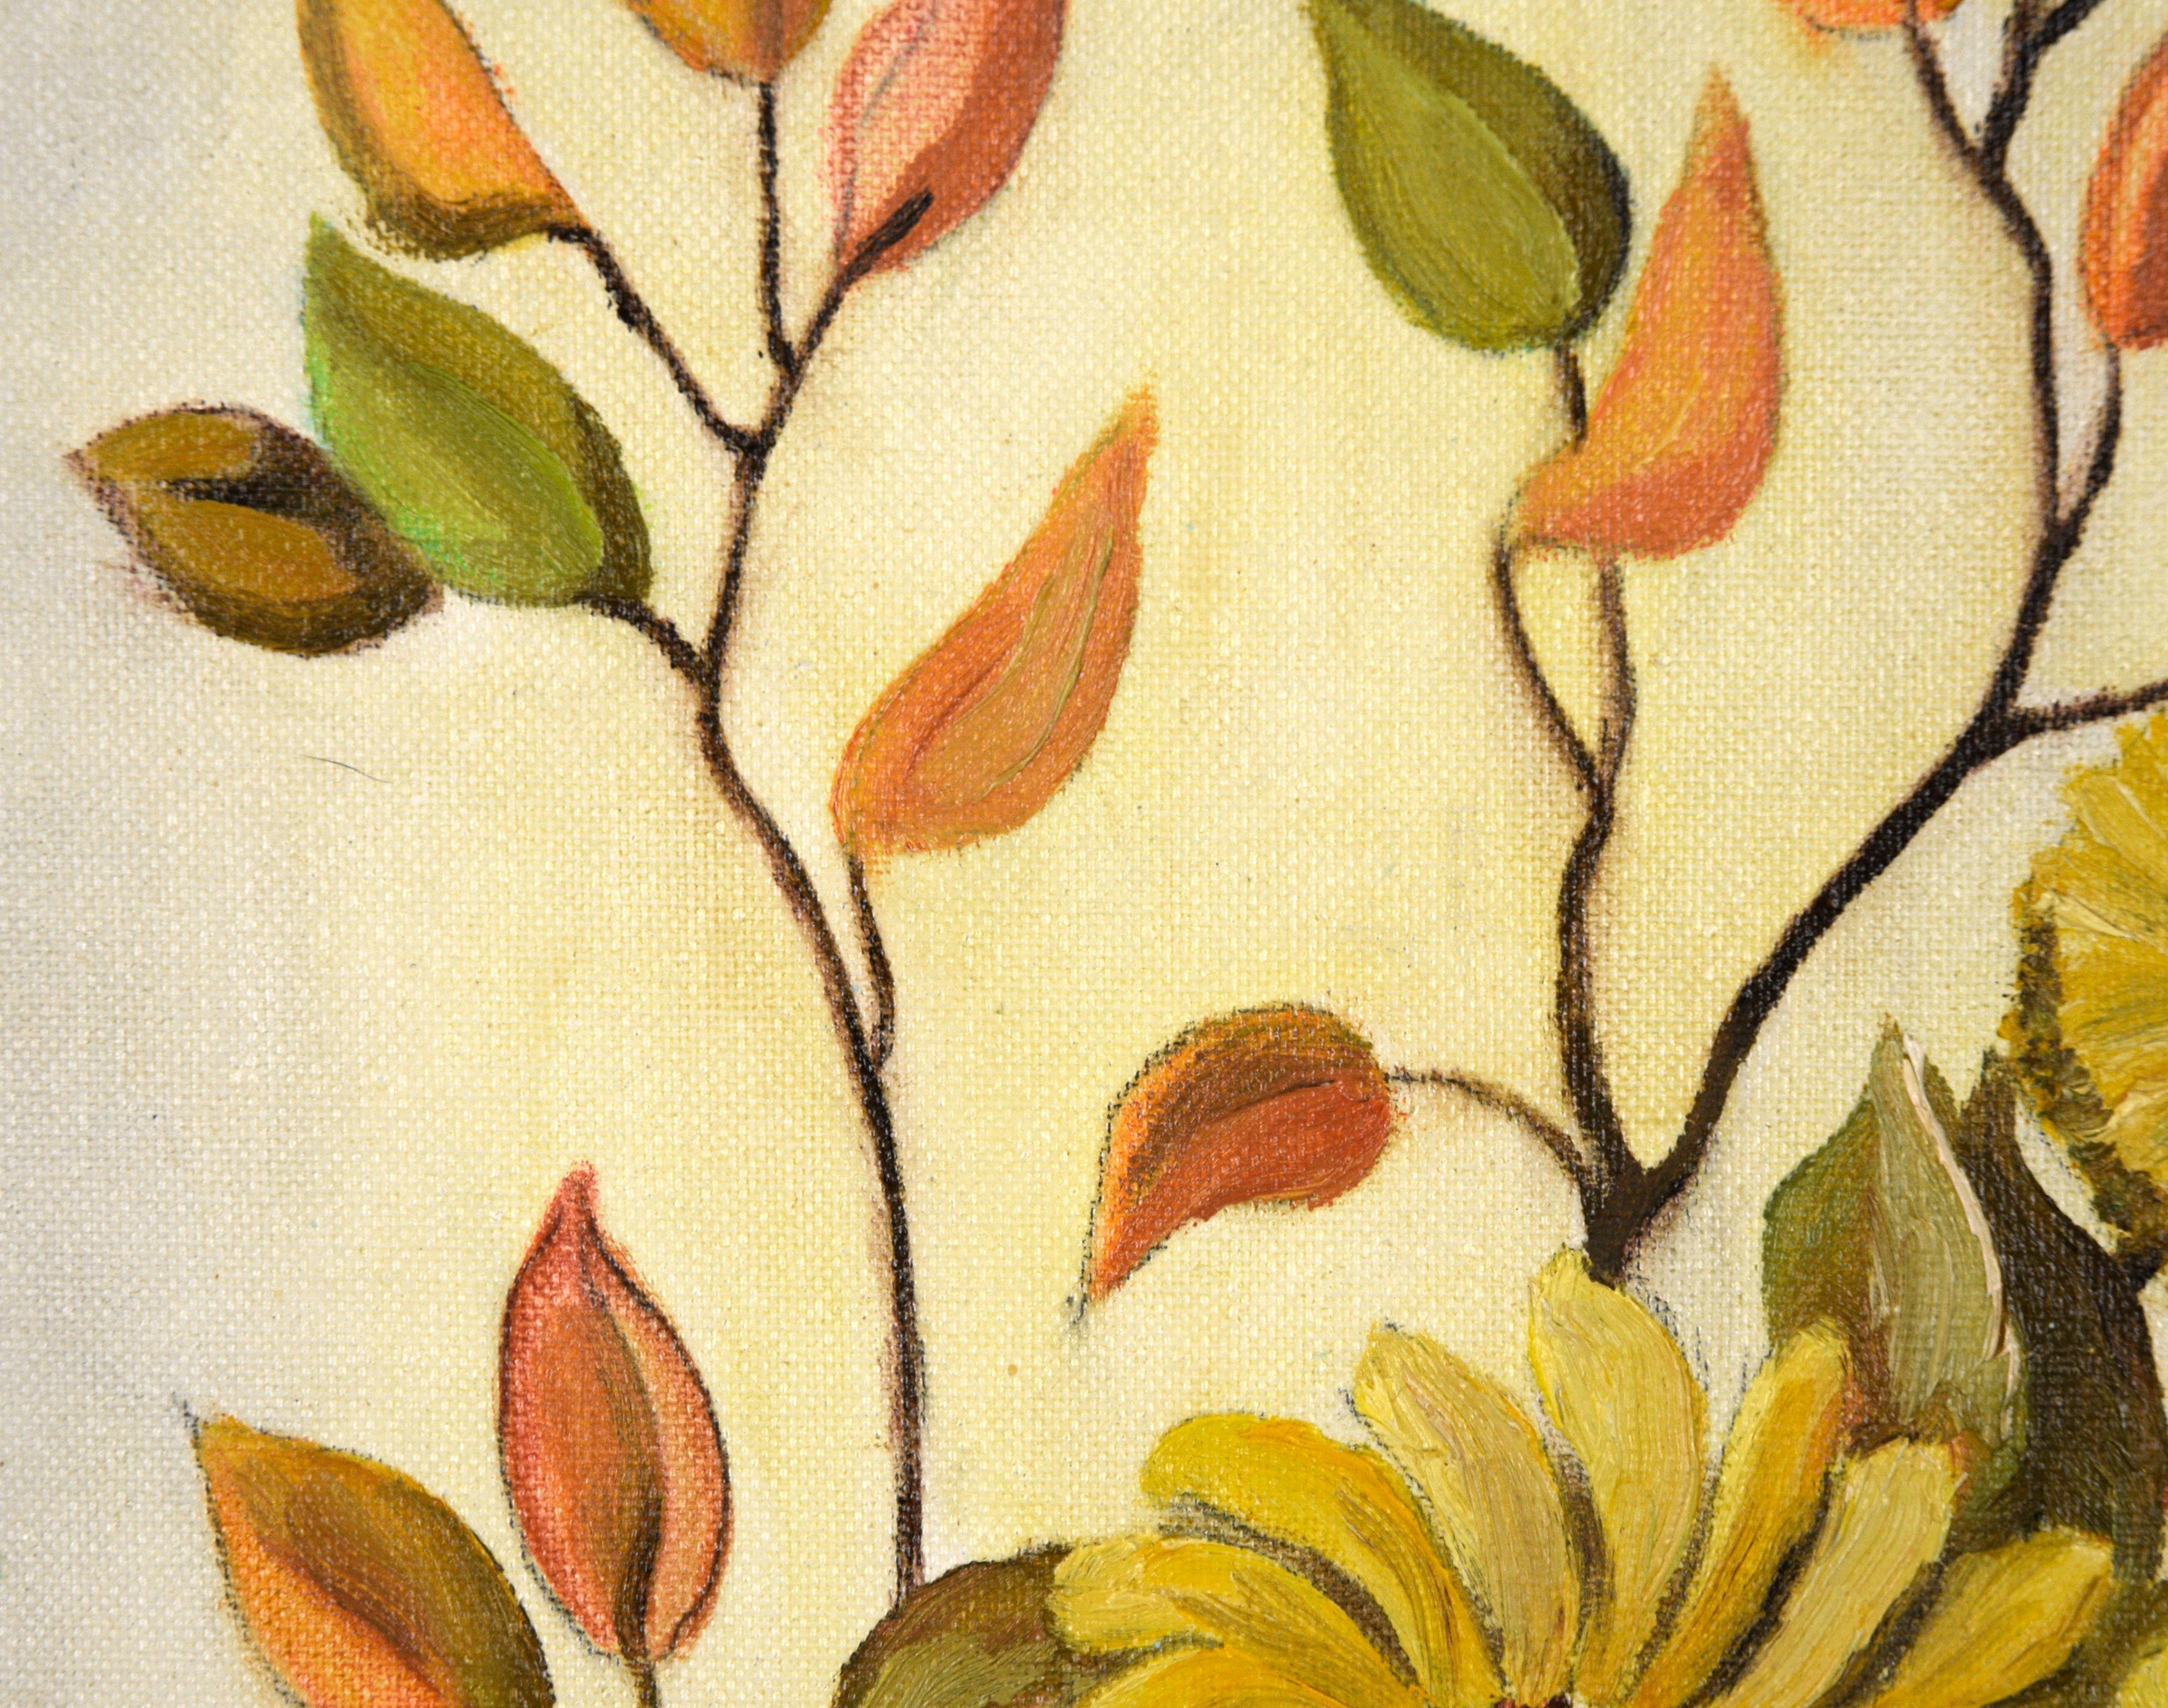 Nature morte du milieu du siècle de l'artiste américaine Jean M. Stites de Fayetteville, Caroline du Nord (née en 1929). Une variété de fleurs jaunes sont dans un vase rougeâtre, entourées de branches avec des feuilles orange et vertes. Les pétales